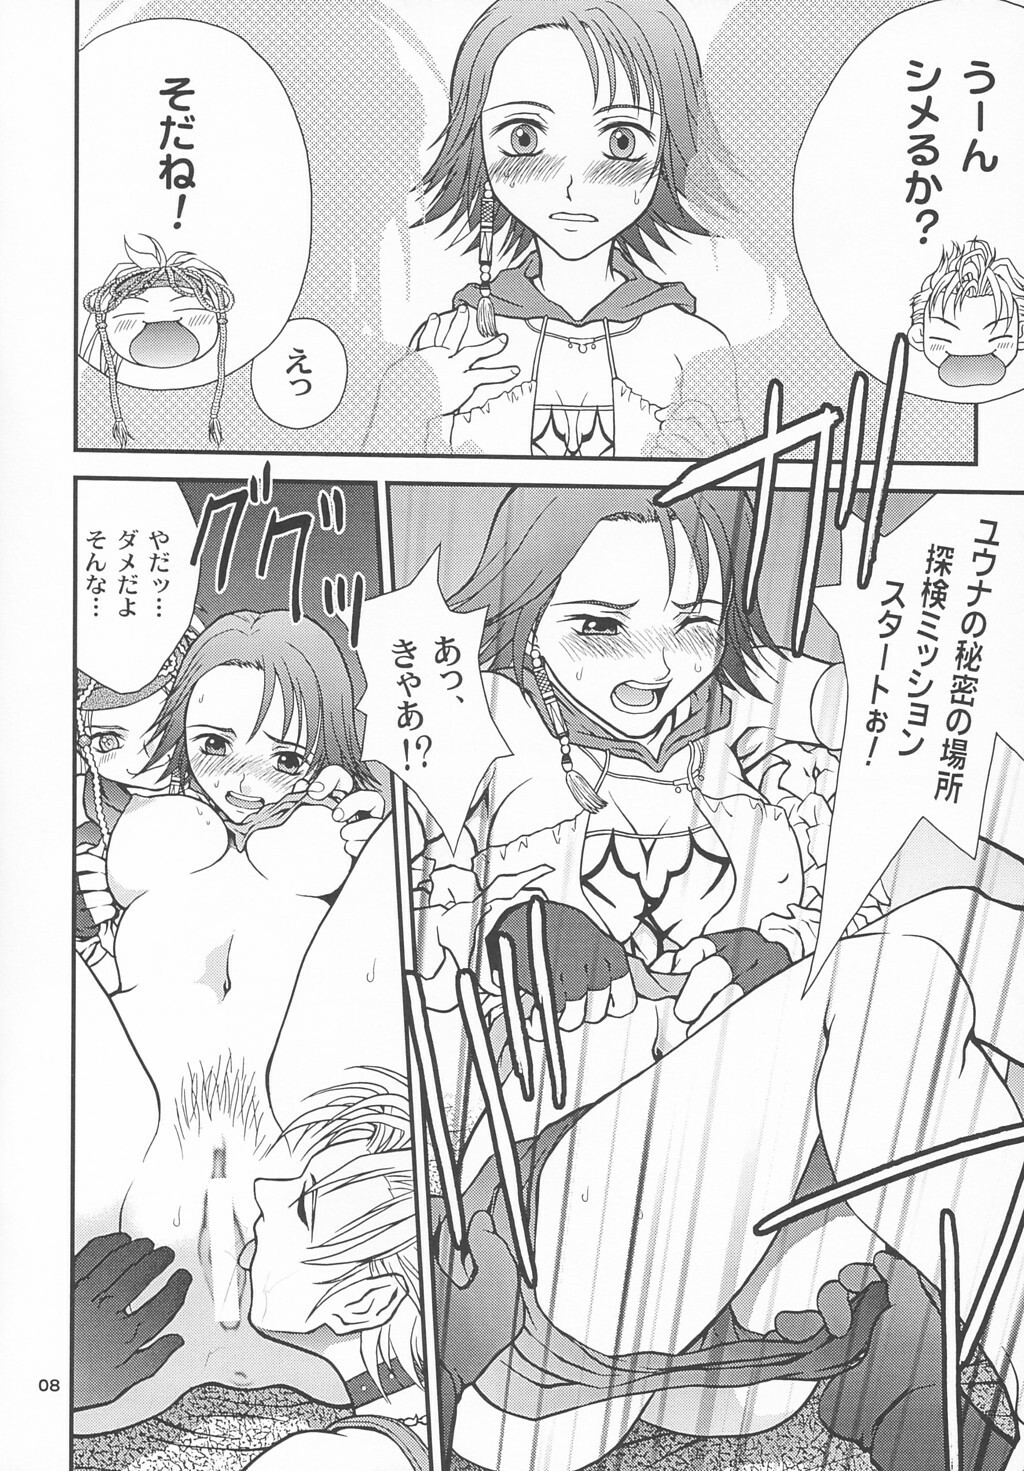 (CR33) [Shiitake (Mugi, Setsuna)] GYUNN GYUNN 13 (Final Fantasy X-2) page 7 full